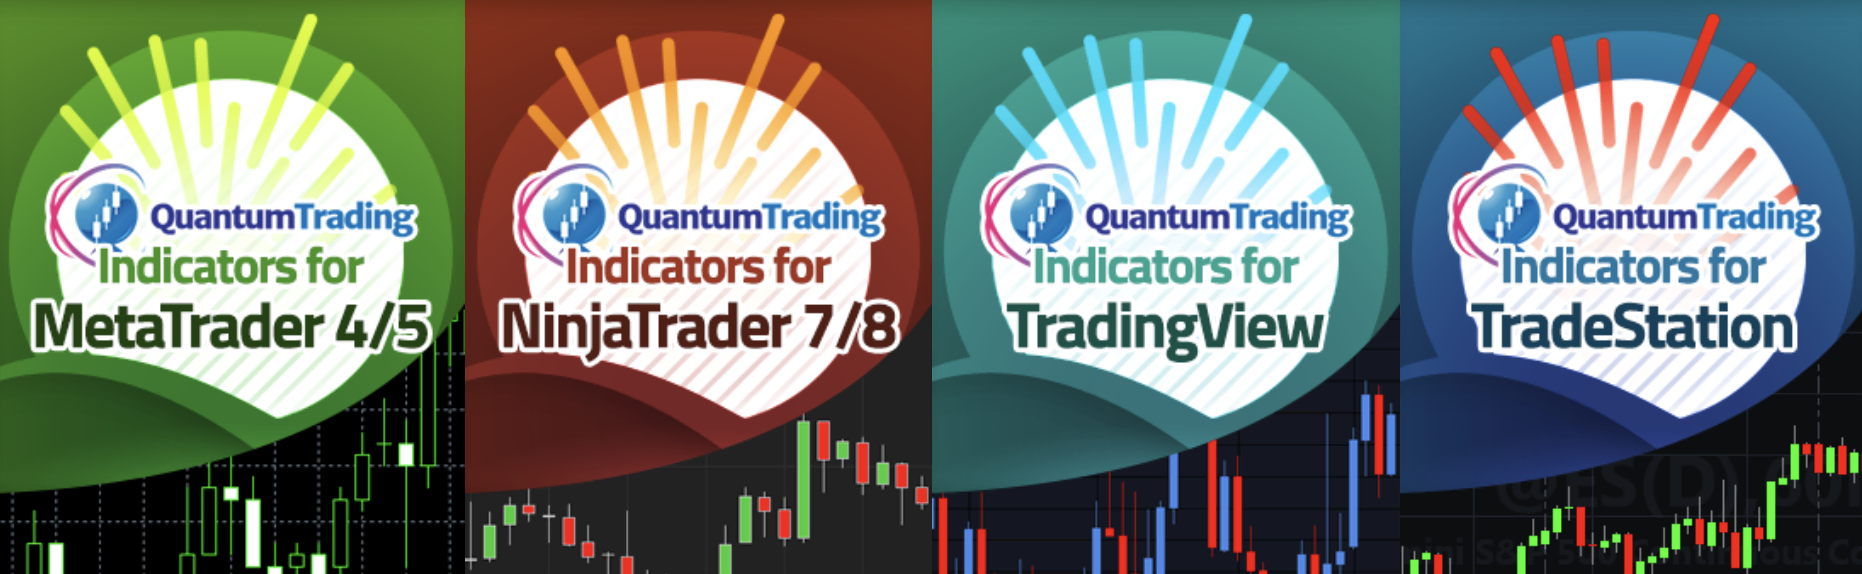 Indicatori disponibili su Quantum Trading